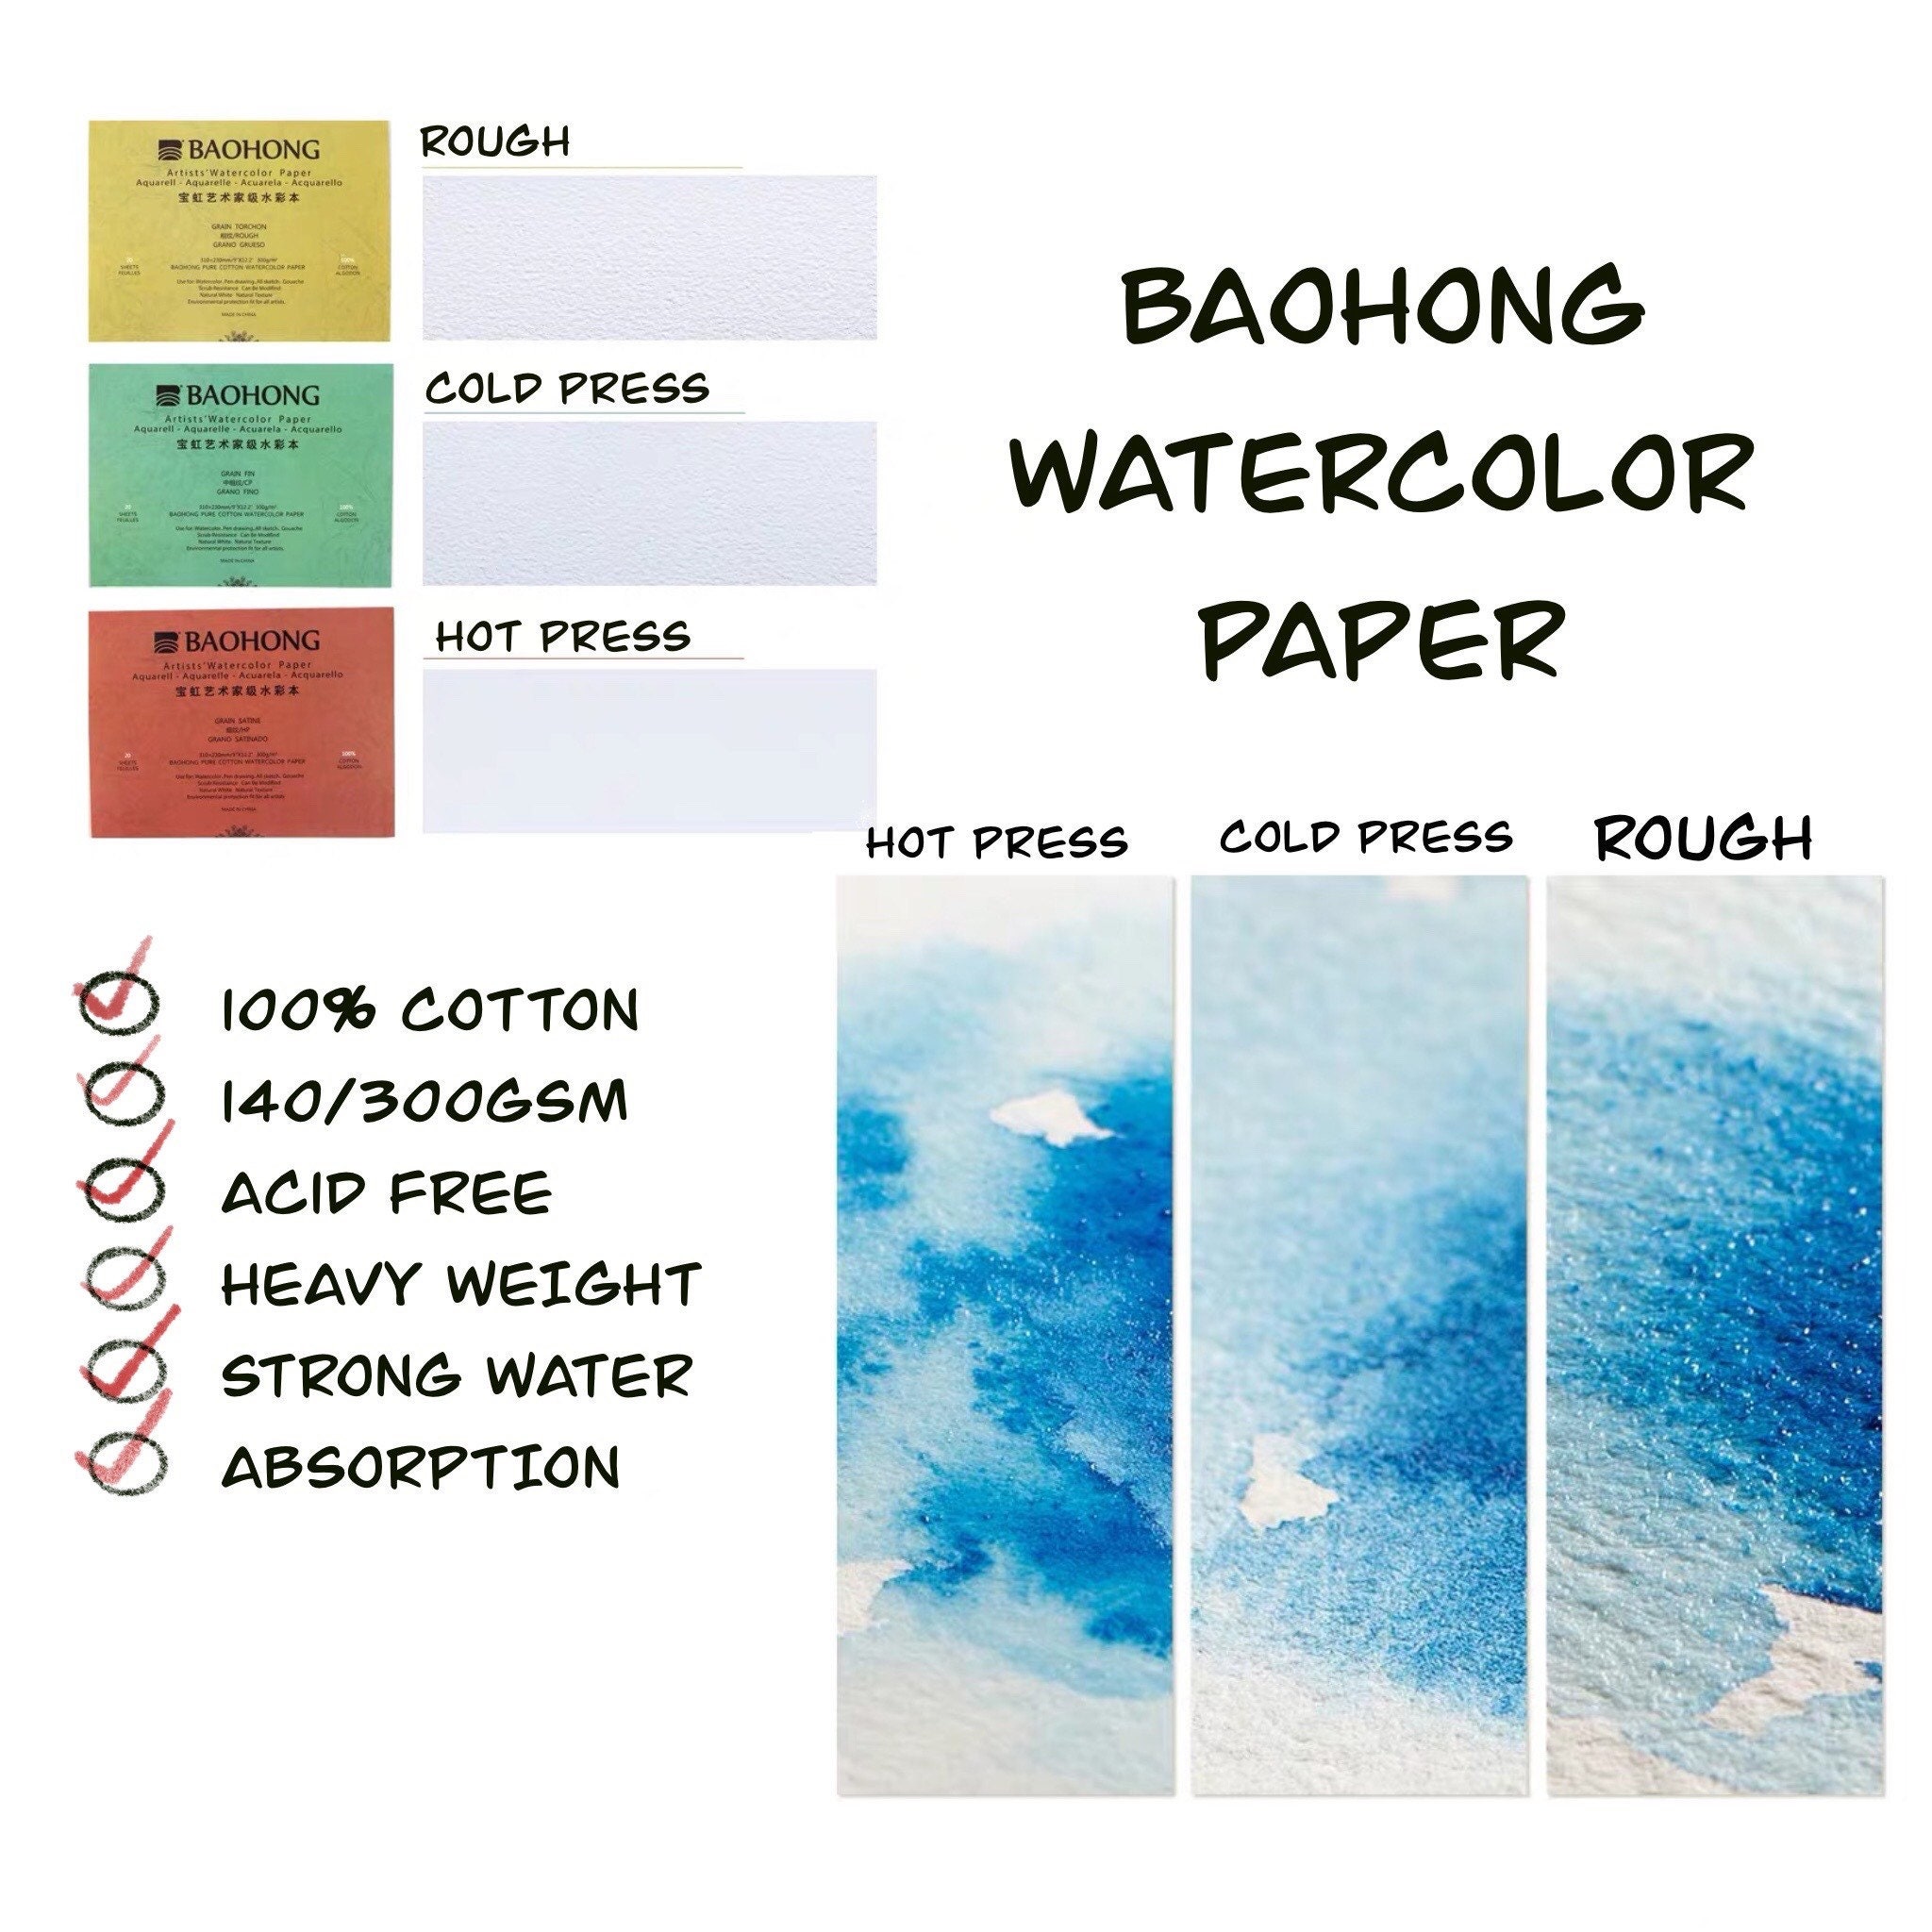 Baohong Watercolor Trial Pad, 4.1x5.7, Artists' Grade, Cold Pressx6, Hot  Press x6, Rough Grain x6, 100% cotton, 140lb/300gsm